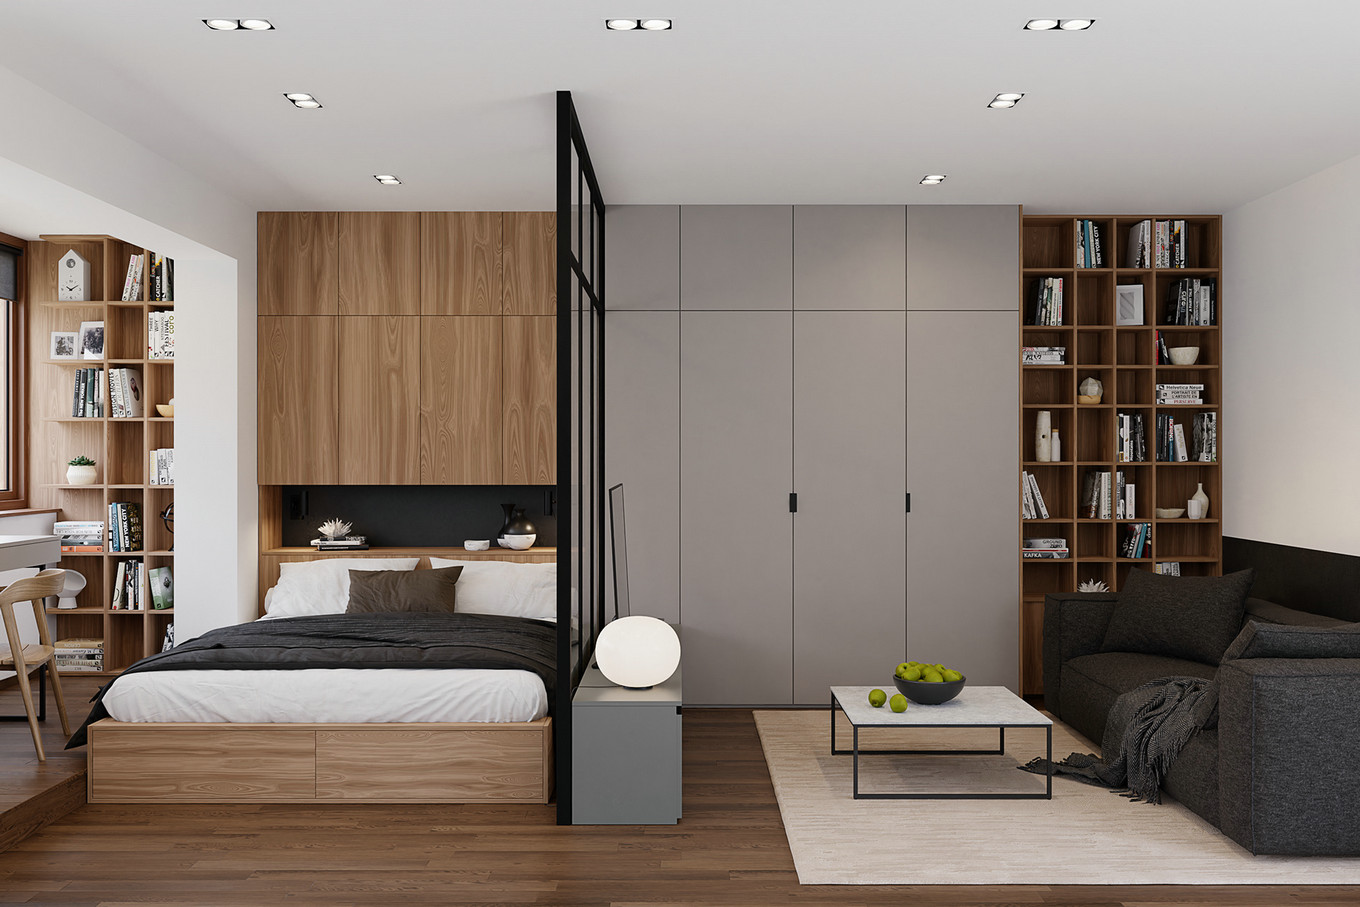 温馨舒适的现代简约小公寓设计